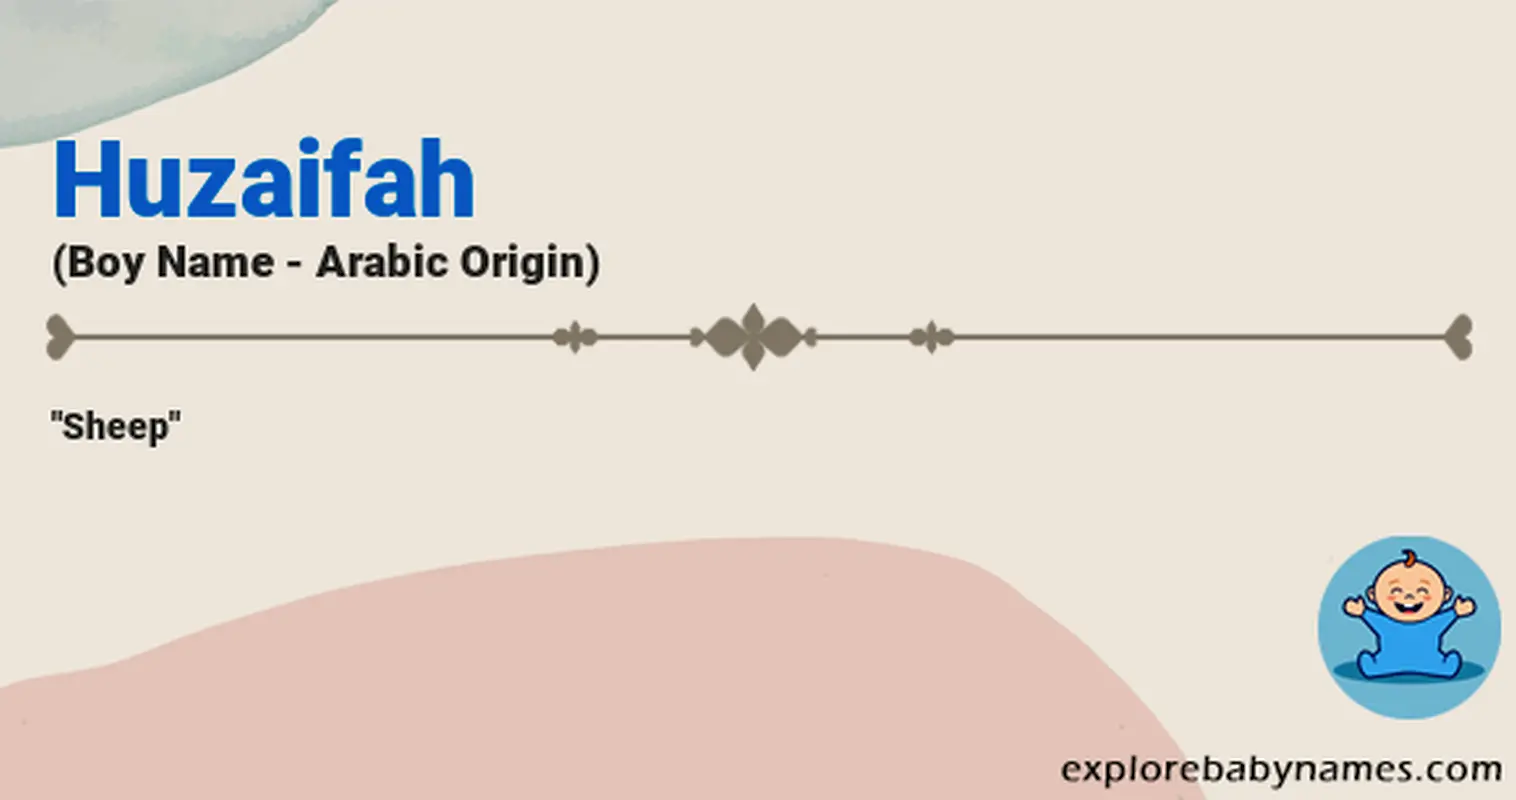 Meaning of Huzaifah